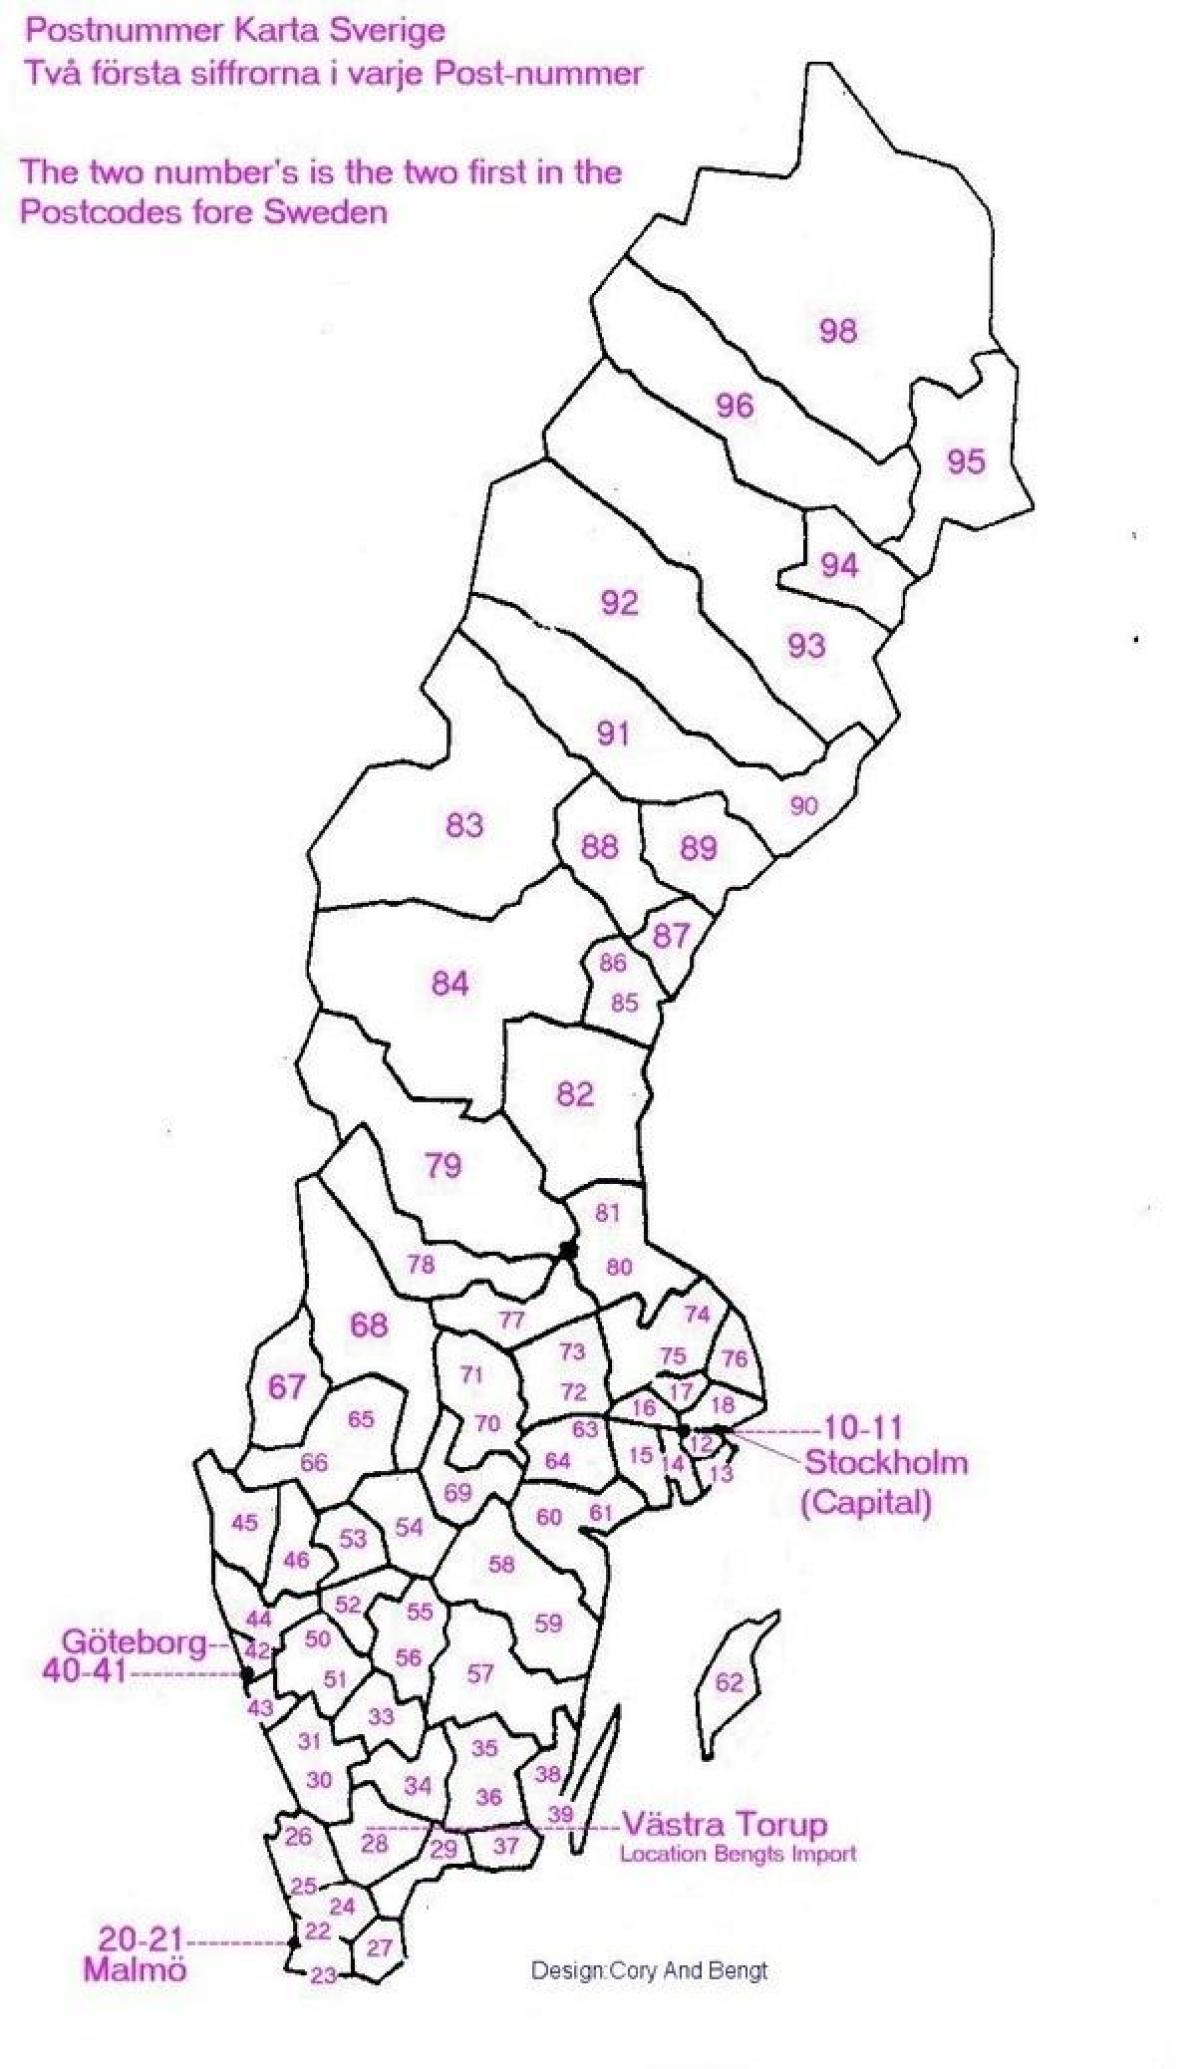 Sverige för postnumret karta - Karta över Sverige för postnumret (Norra